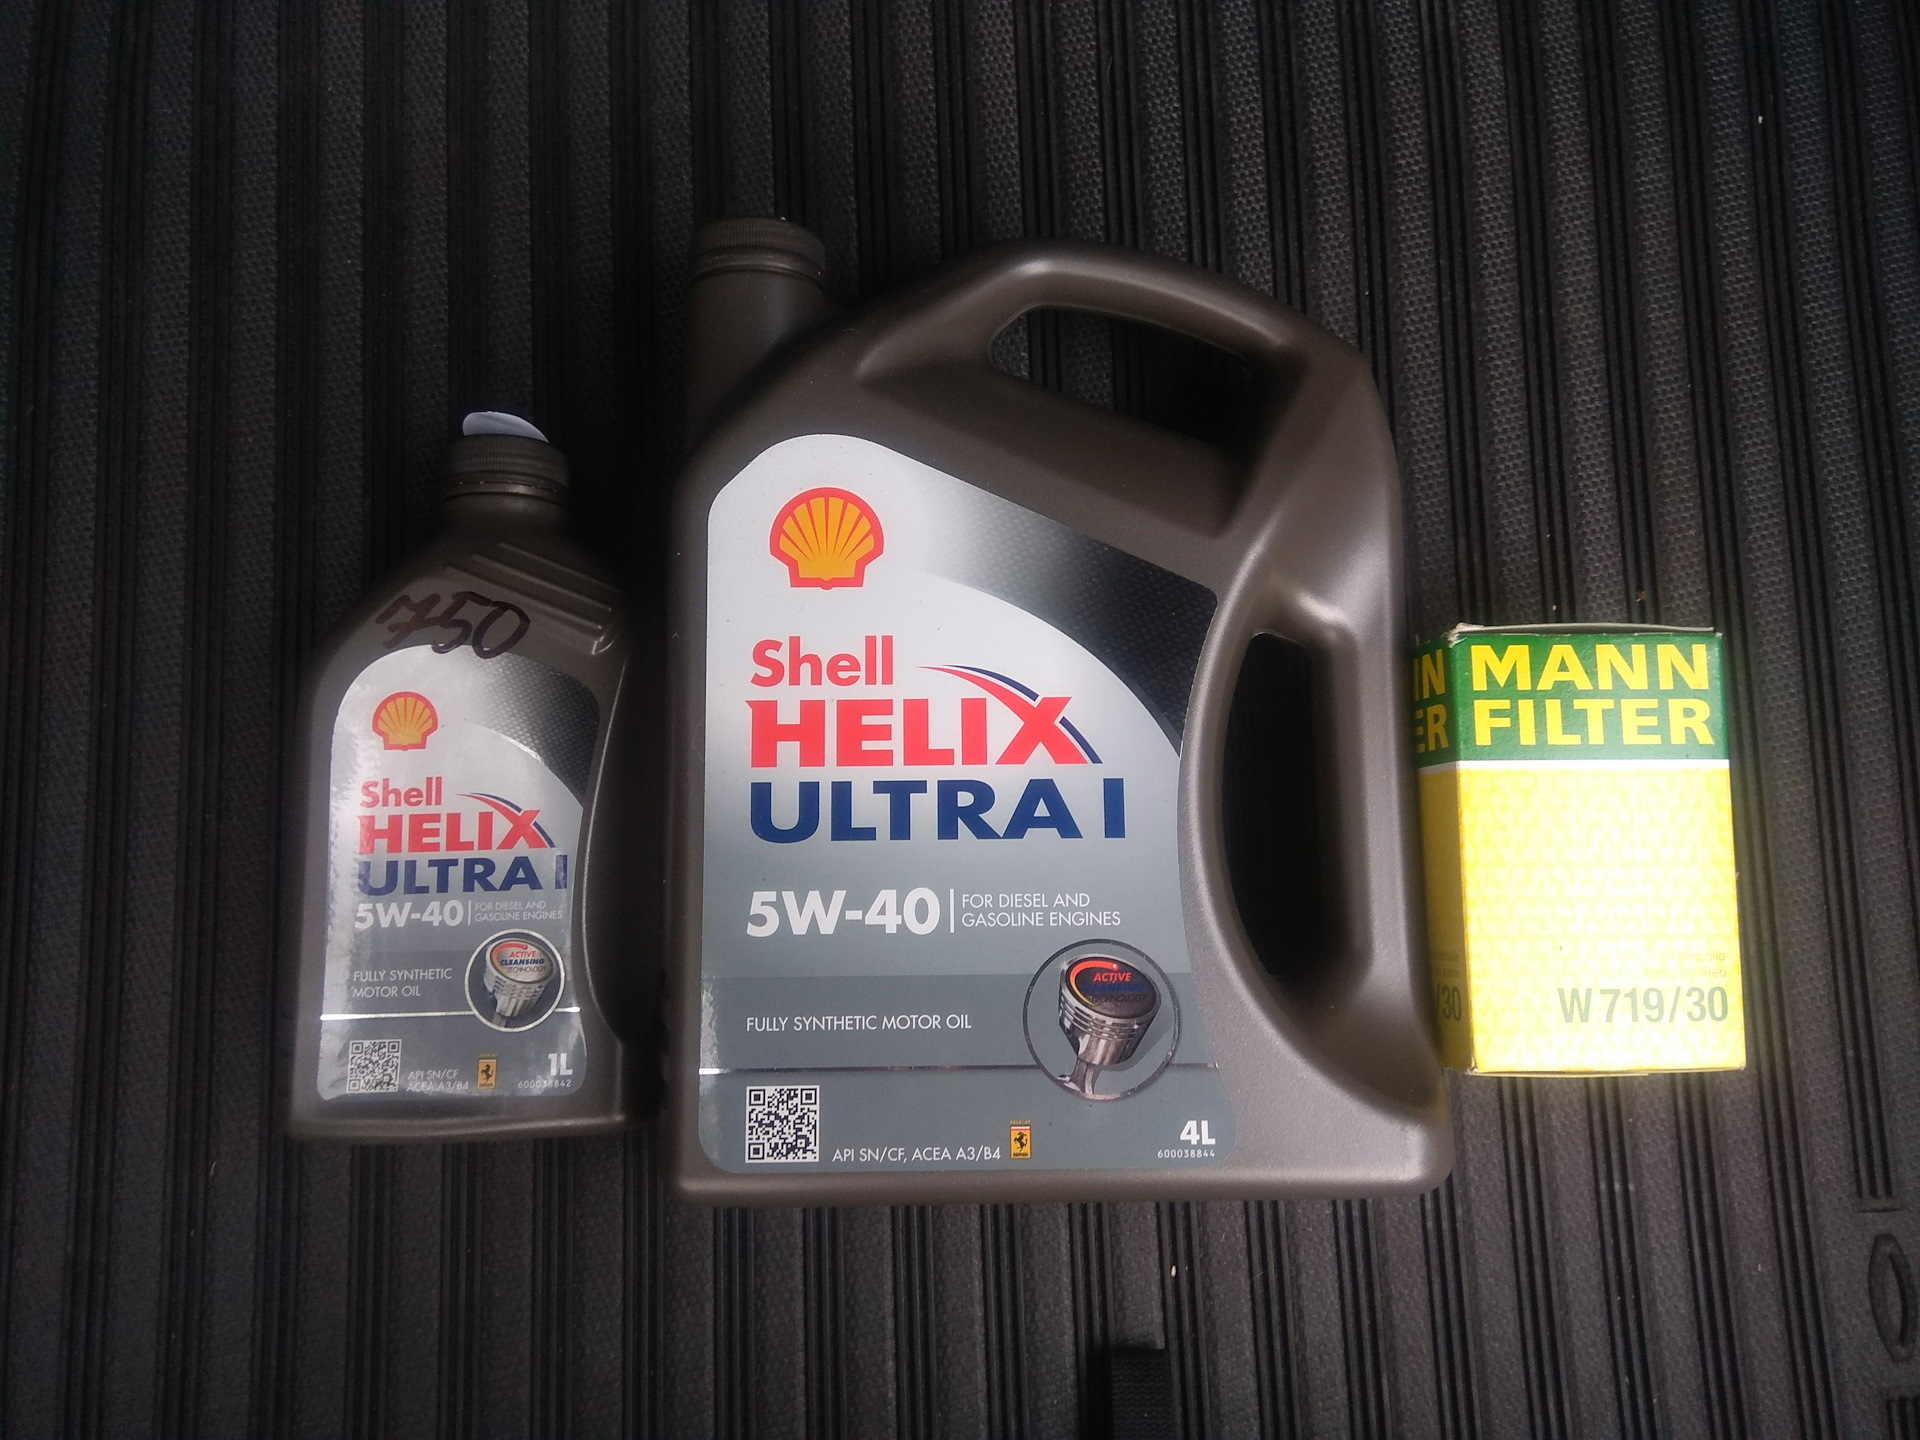 Shell Helix Ultra 5w-40 20 л. в 2022 году. Проверка масла Shell Helix на сайте.